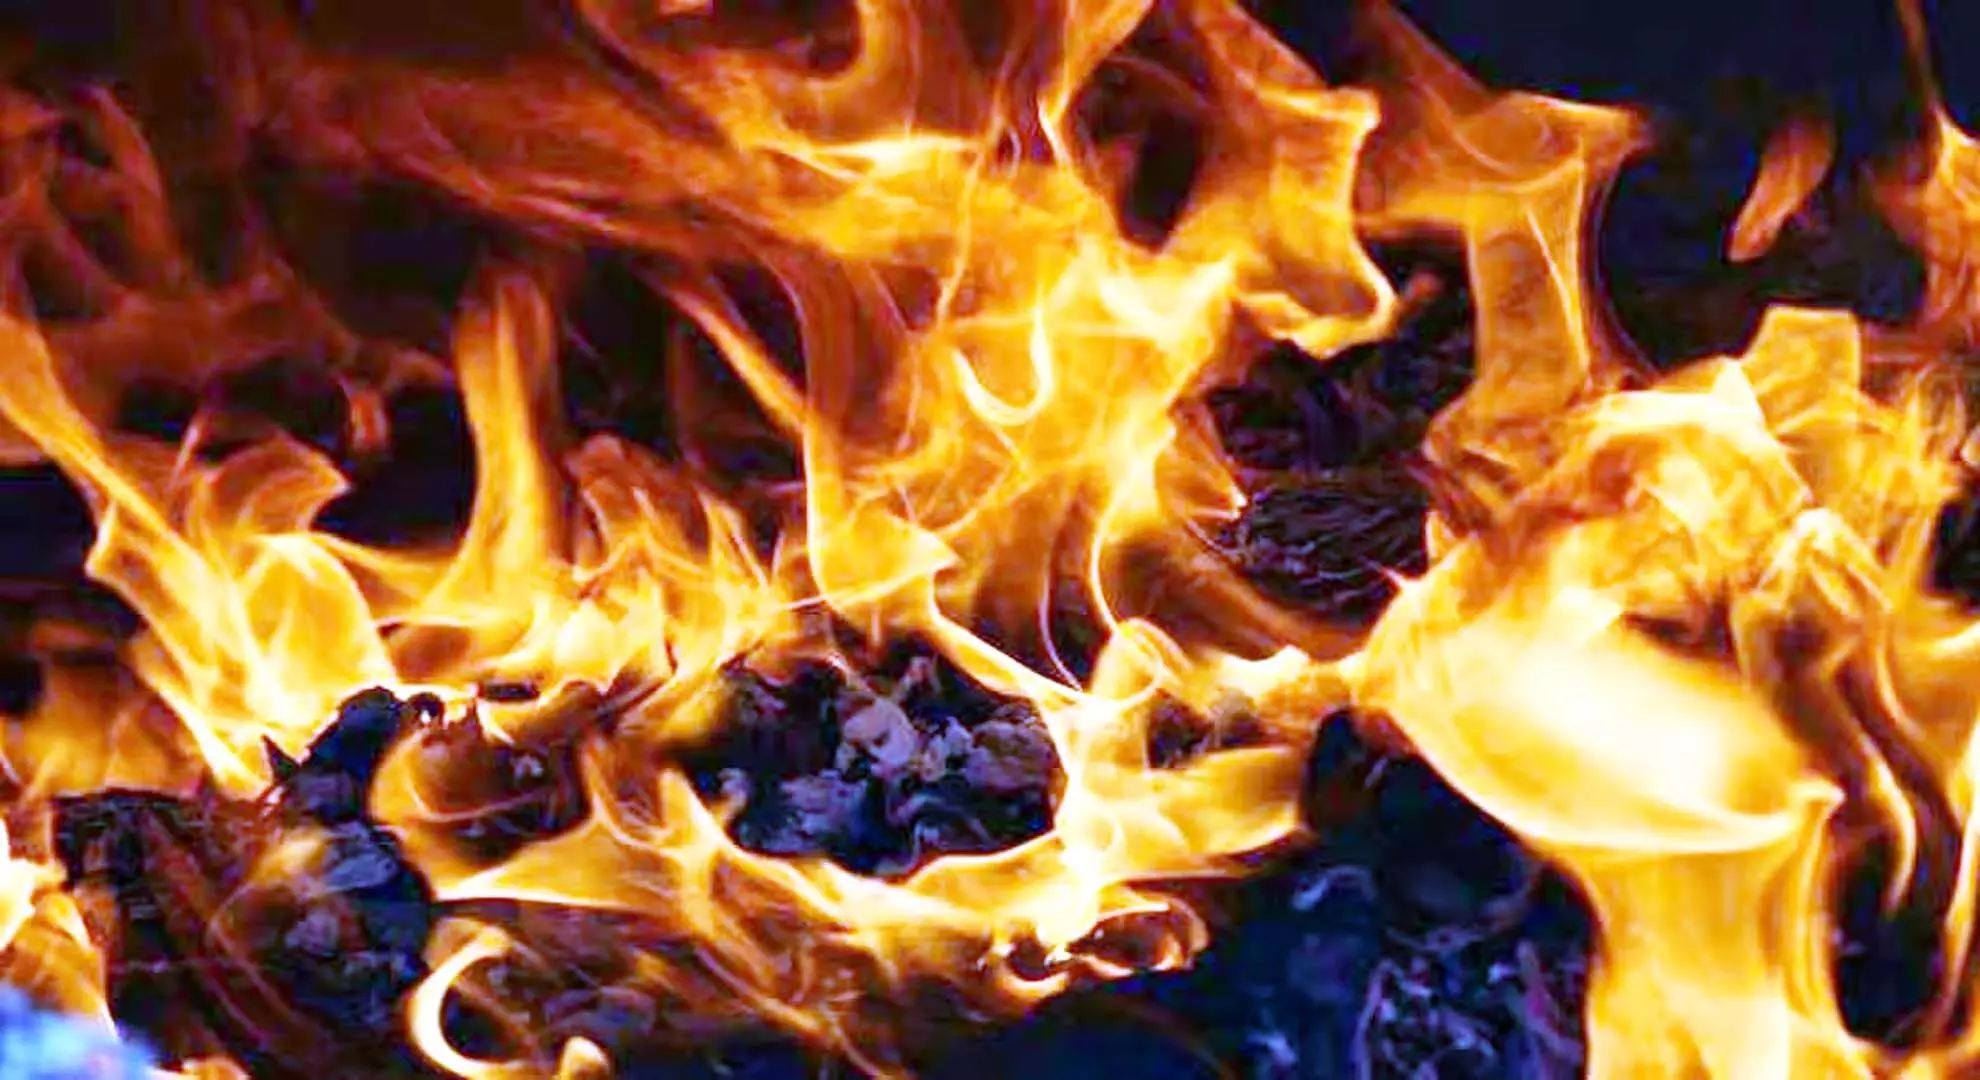 बेंगलुरु: घर में आग लगने से चार साल के बच्चे की मौत